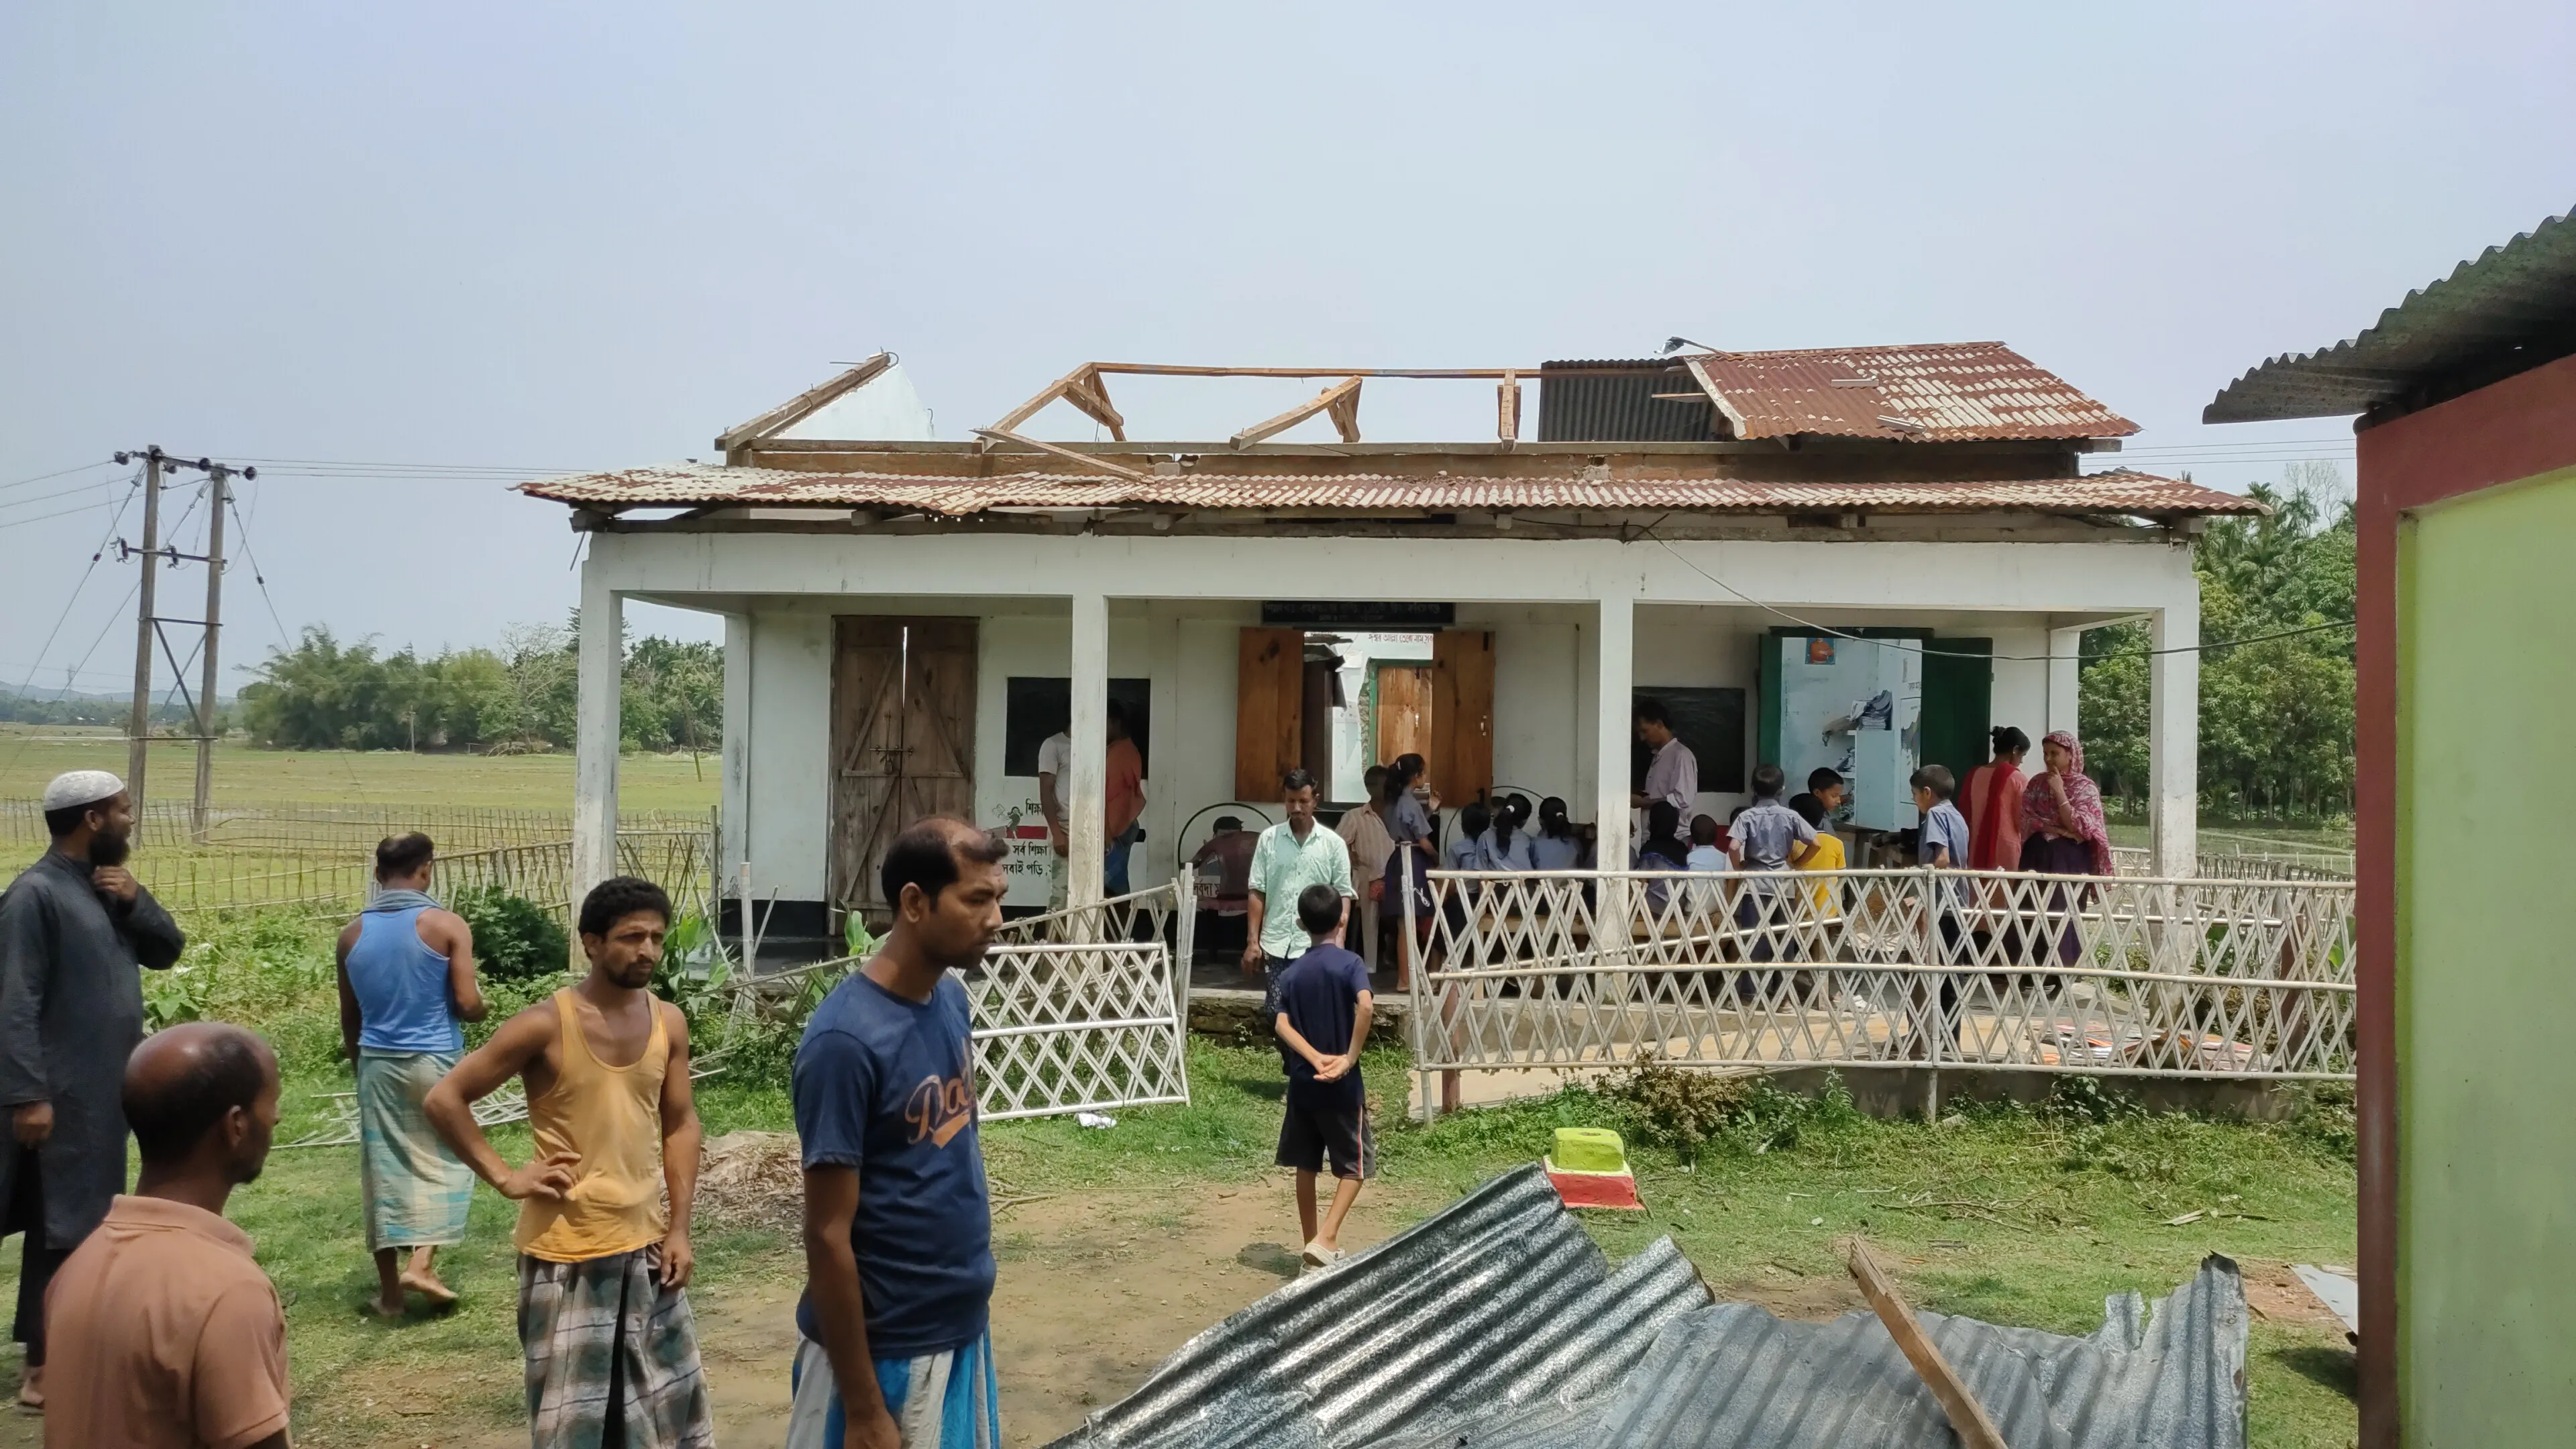 चक्रवात कालवैशाखी तूफान से सरकारी स्कूलों सहित कई गांवों के सार्वजनिक संसाधनों को पहुंचा नुकसान